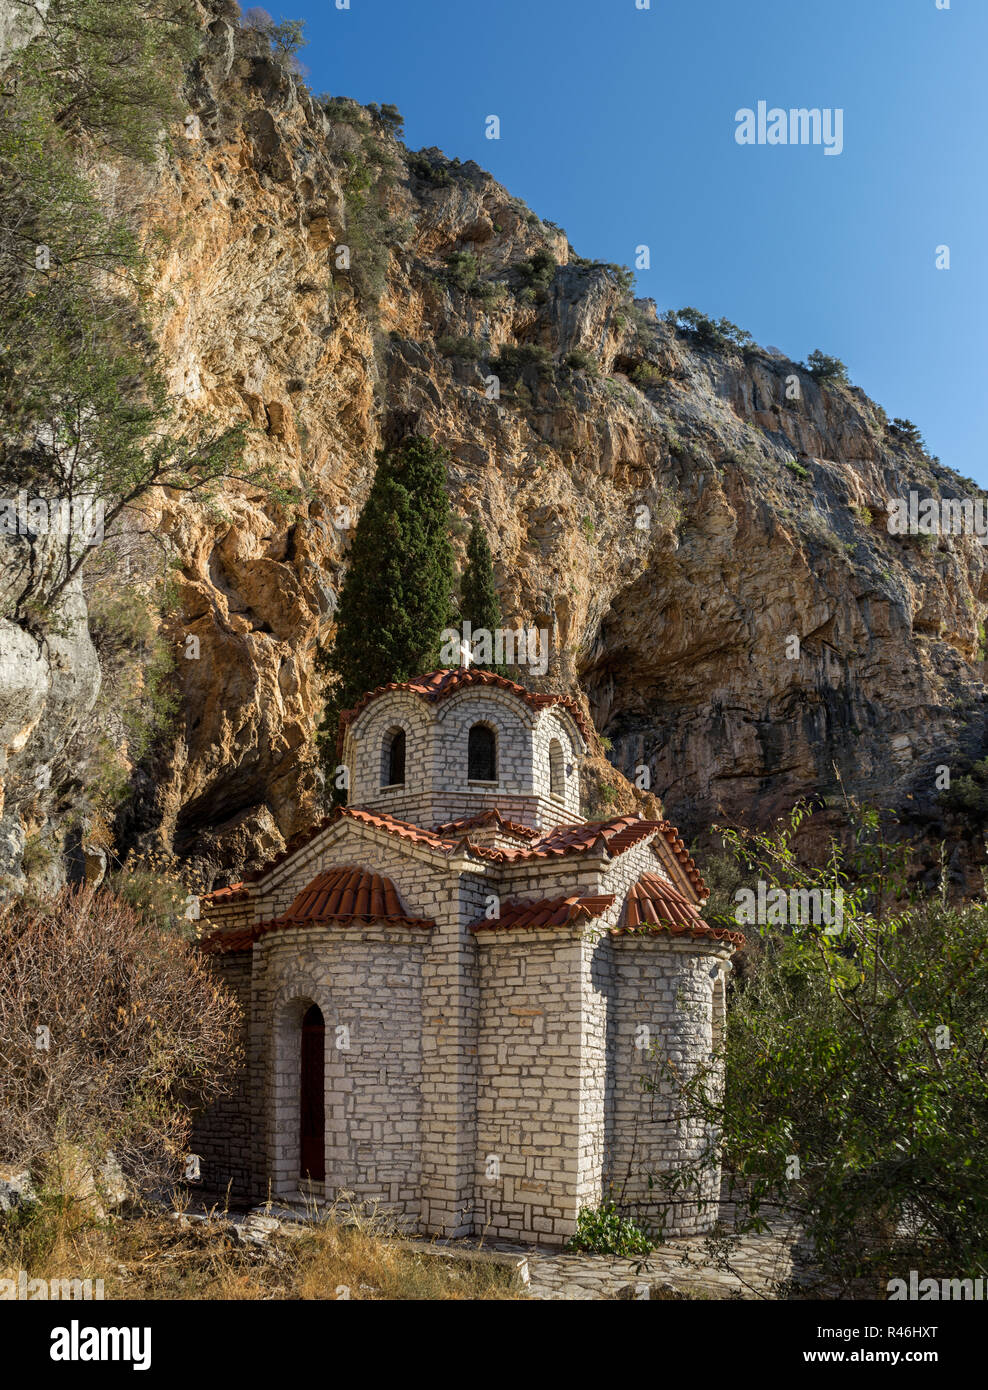 Santa Eleousa Kirche in die Landschaft der westlichen Griechenland. Typische byzantinischen religiösen Architektur. Ein sehr schöner Ort zu besuchen. Stockfoto